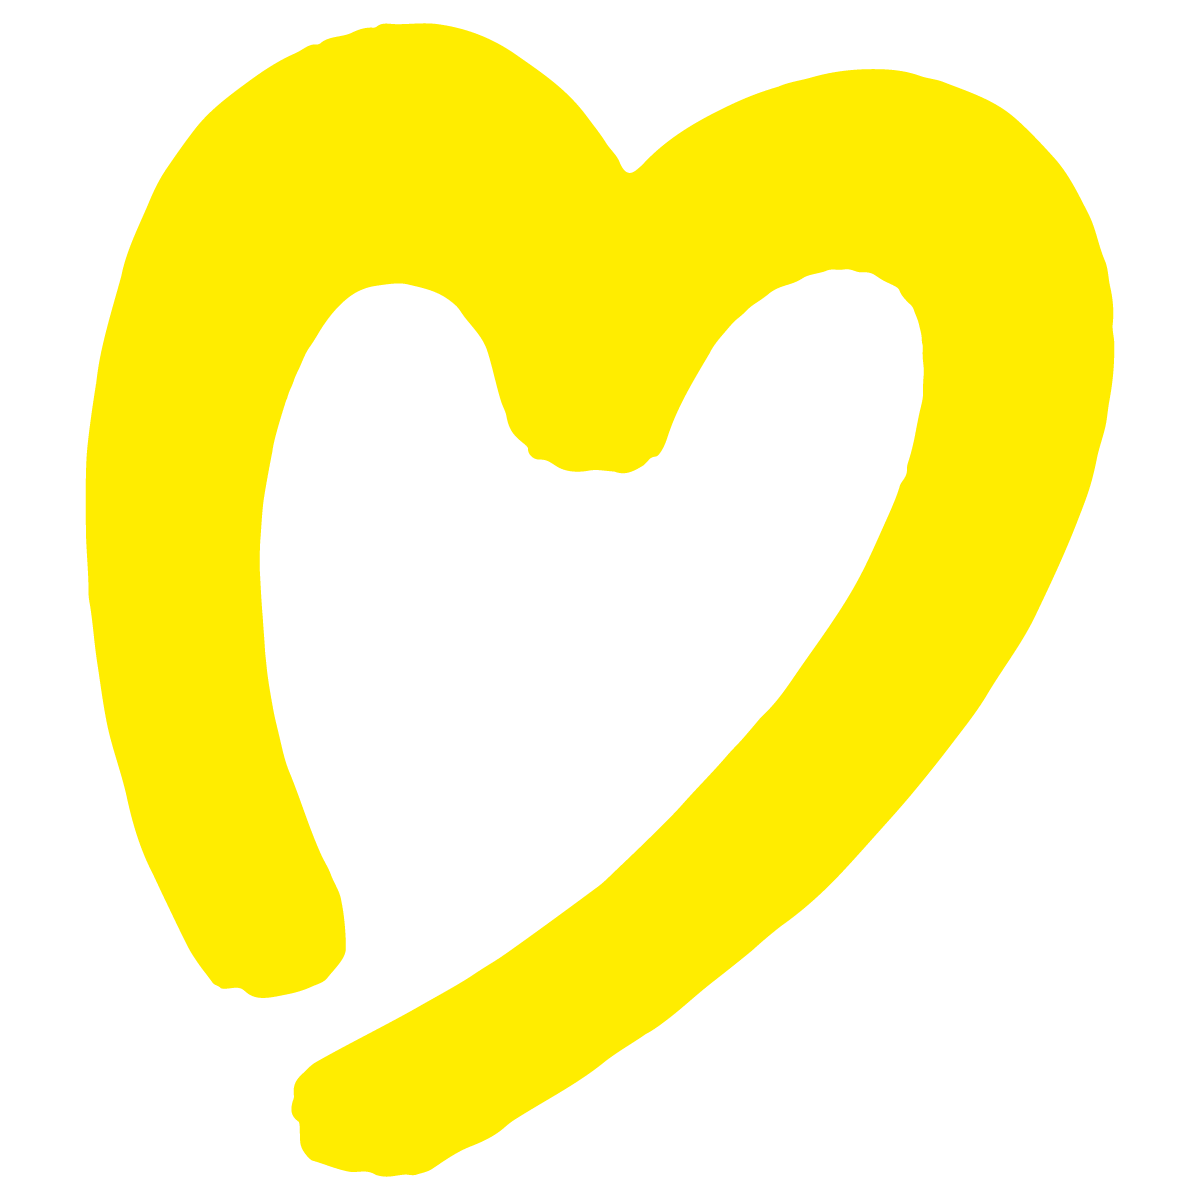 heart_symbol3.png